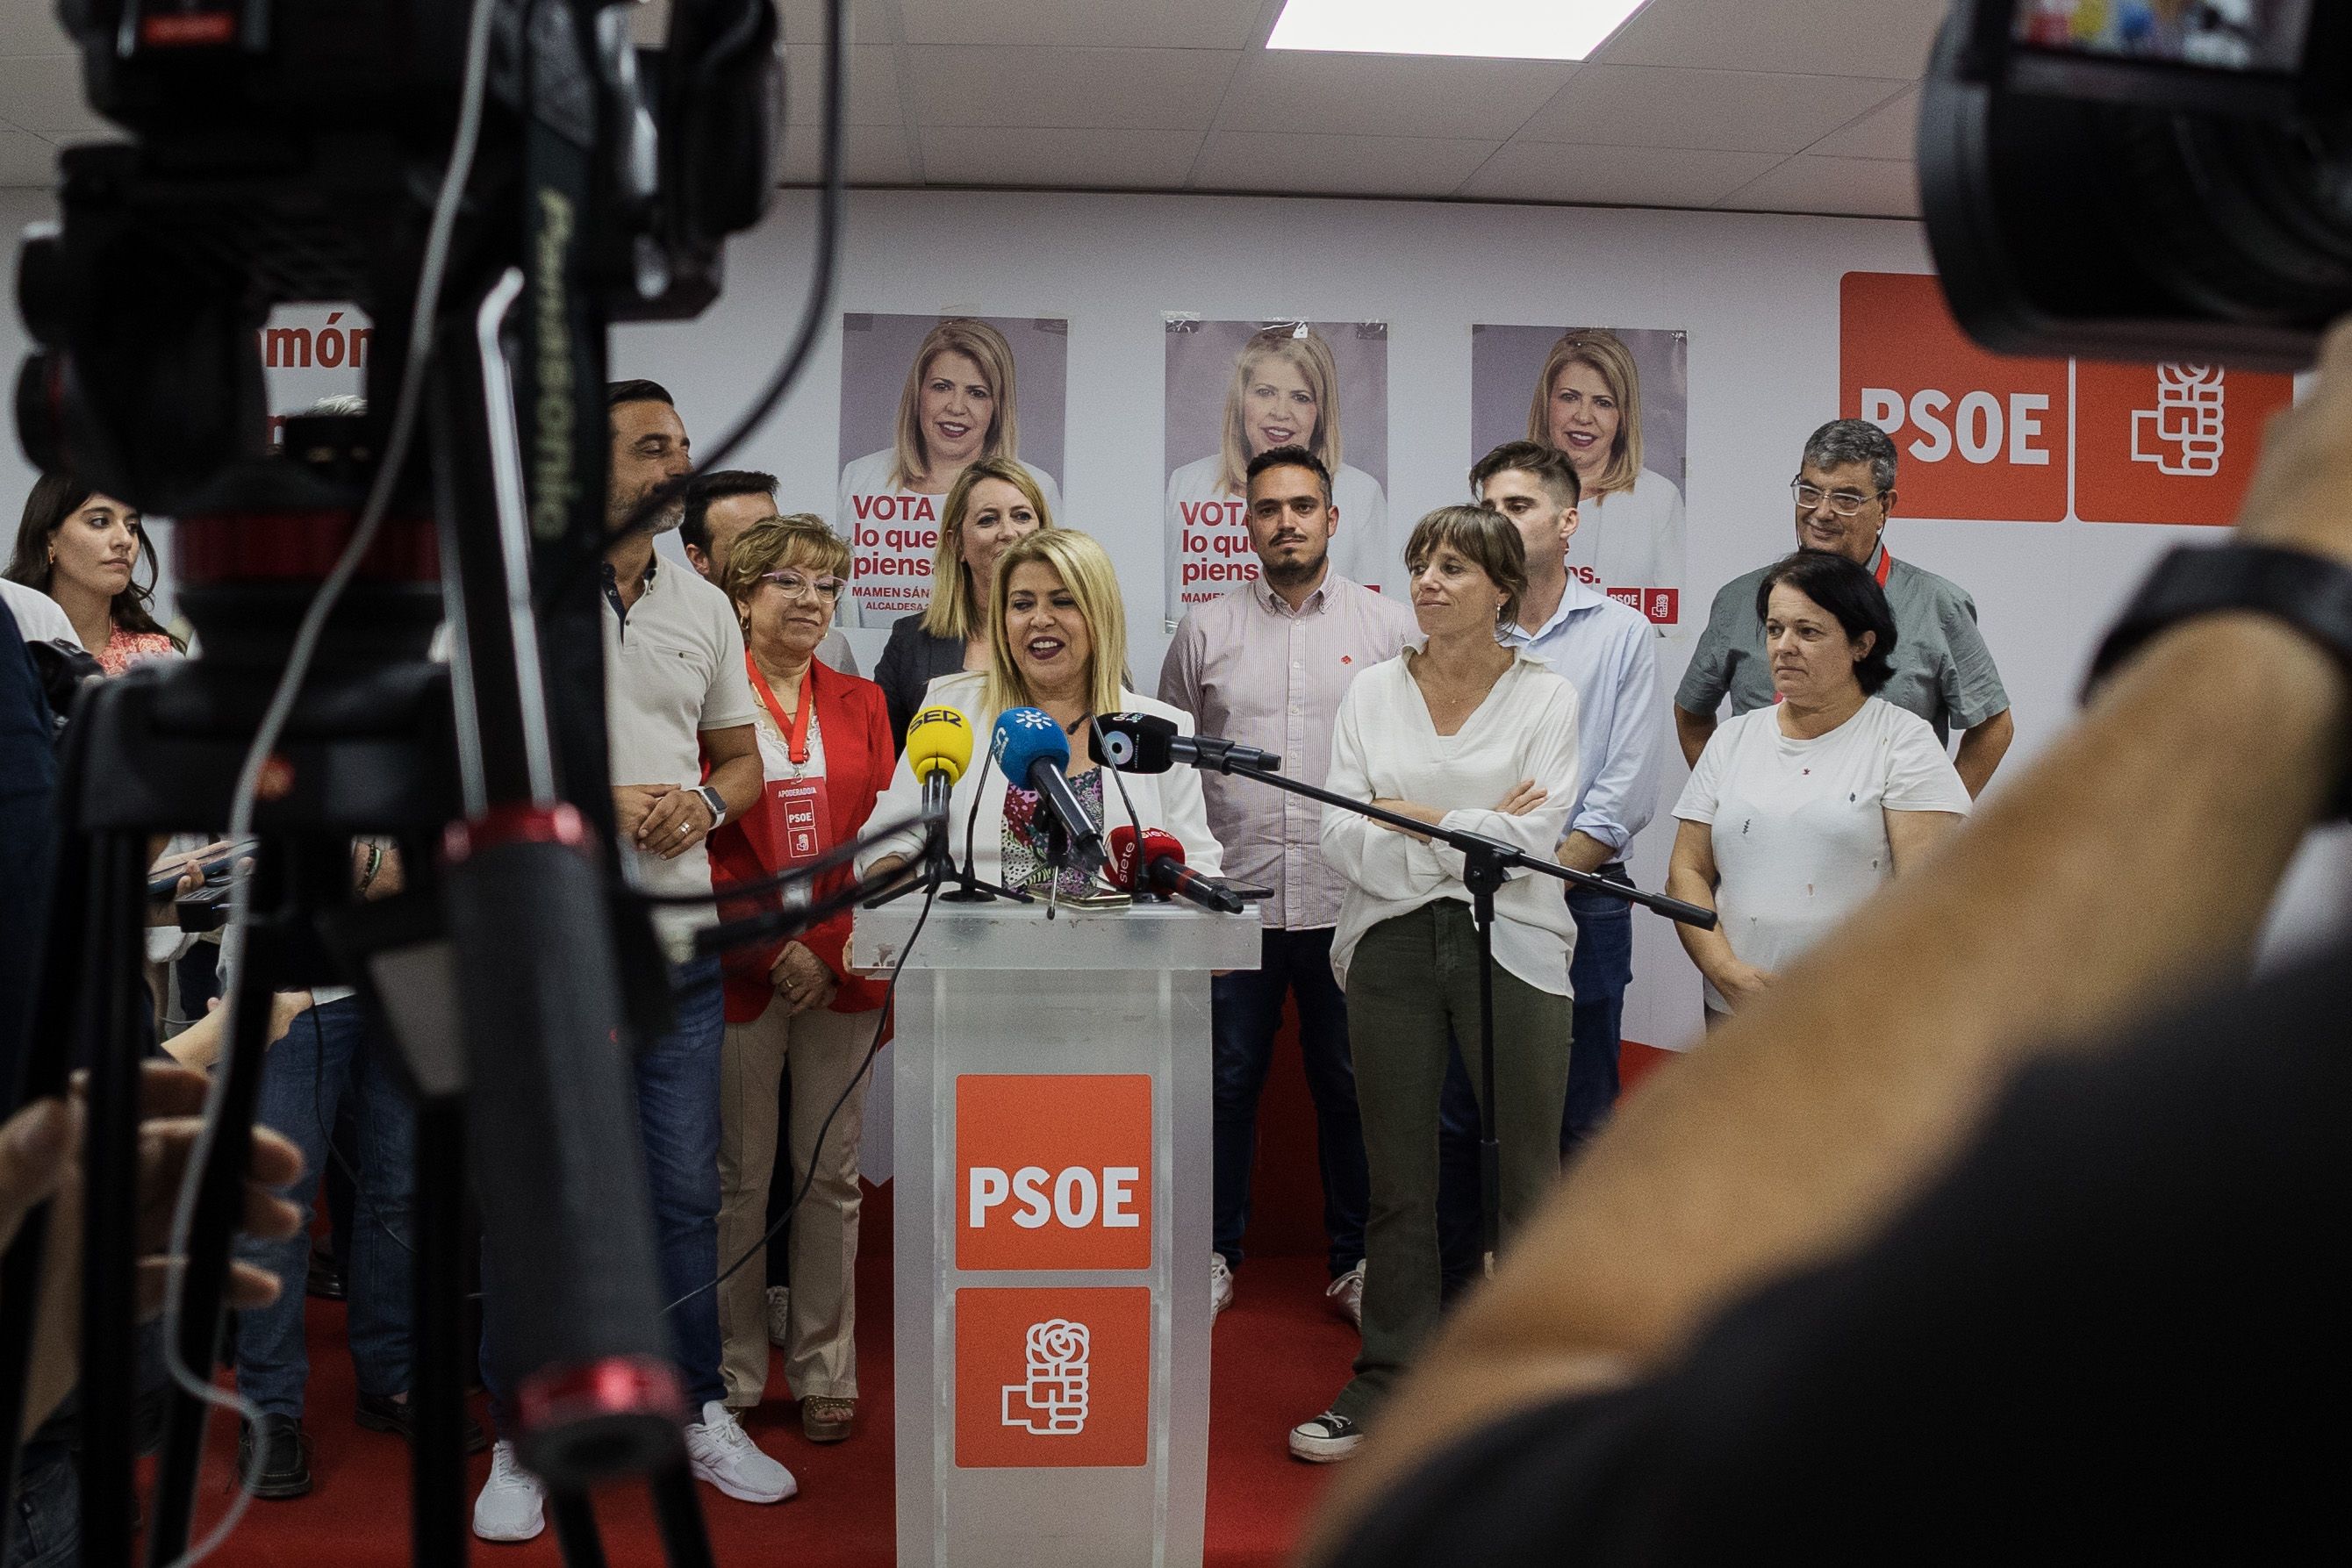 Imagen de la noche electoral del 28M en la sede del PSOE de Jerez de la calle Sevilla.